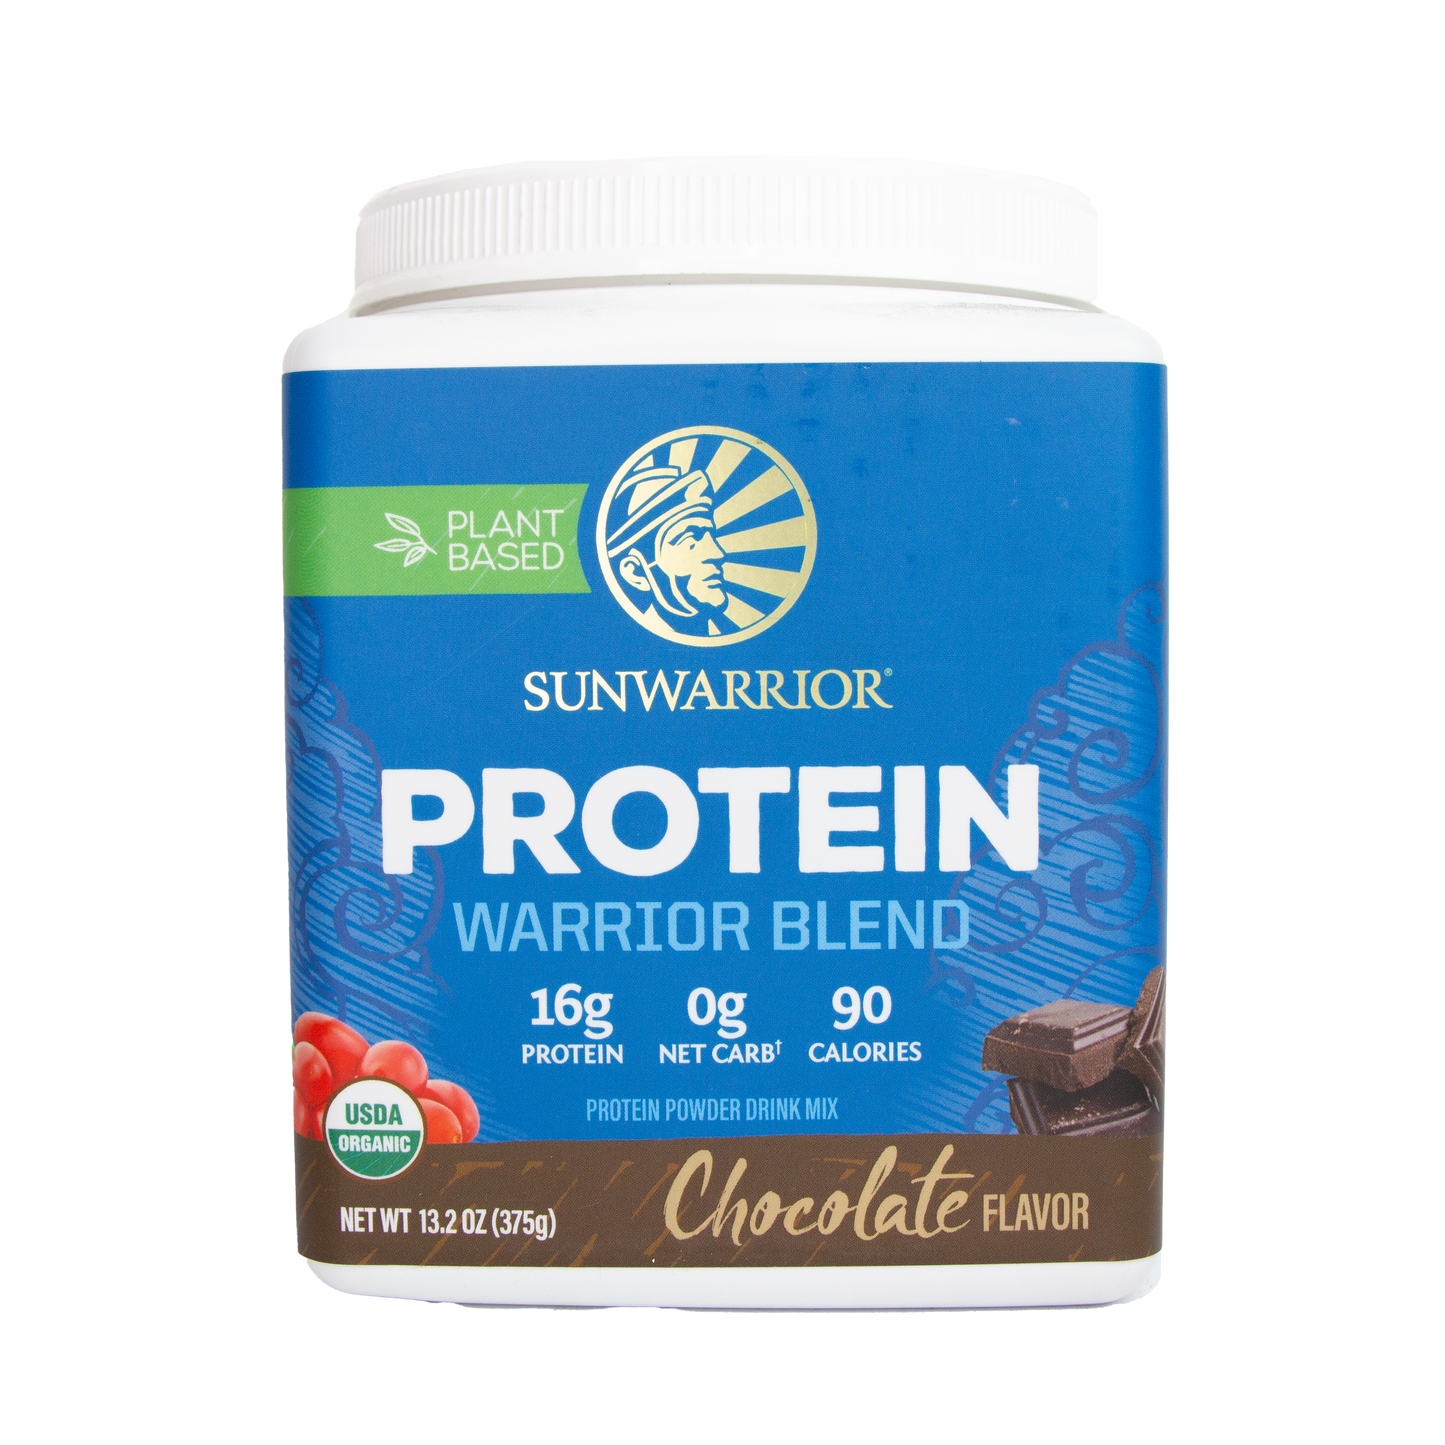 Sunwarrior Protein - Warrior Blend Chocolate